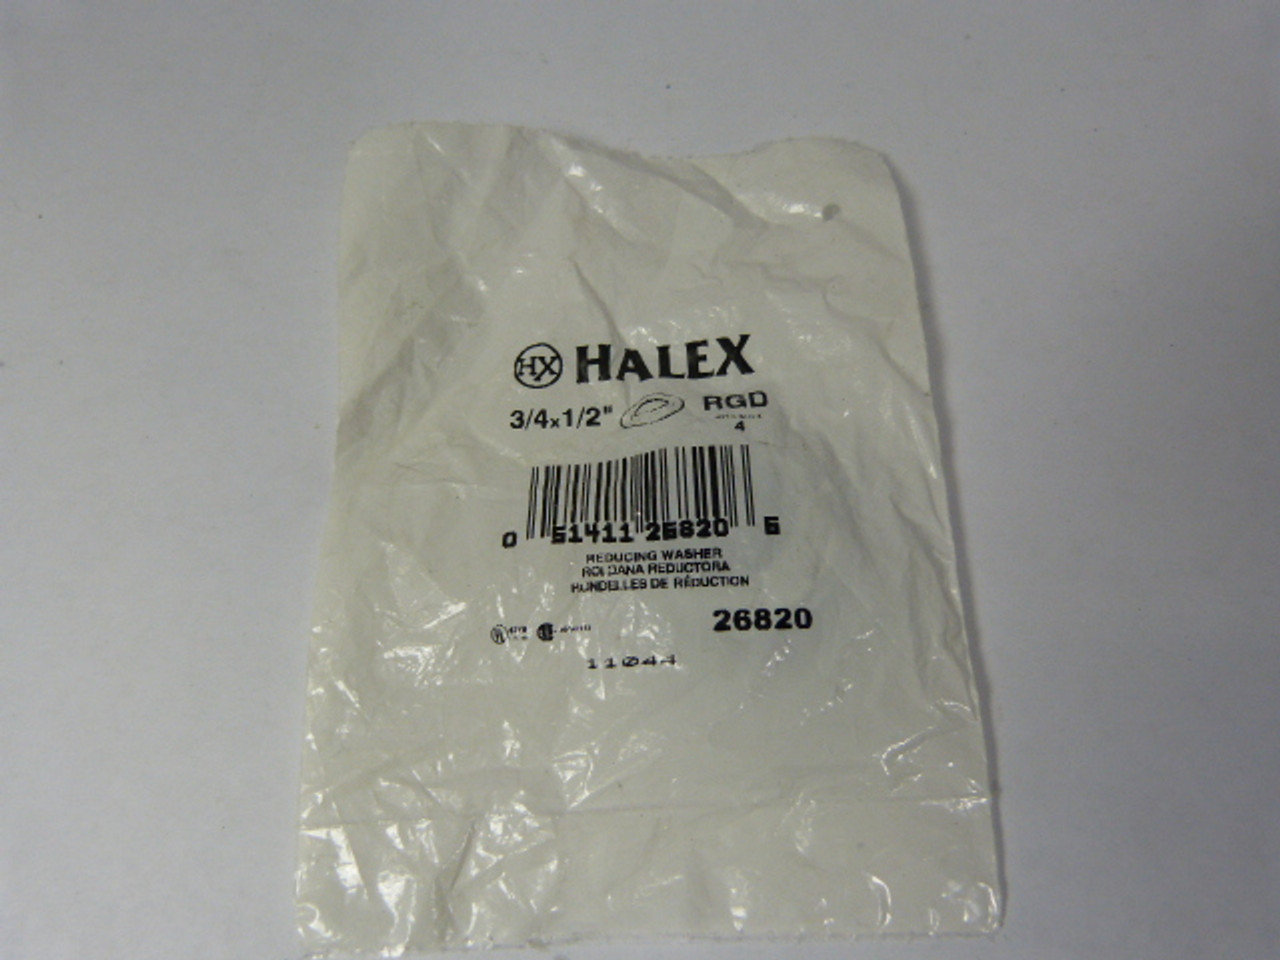 Halex 3/4X1/2 Reducing Washer NWB